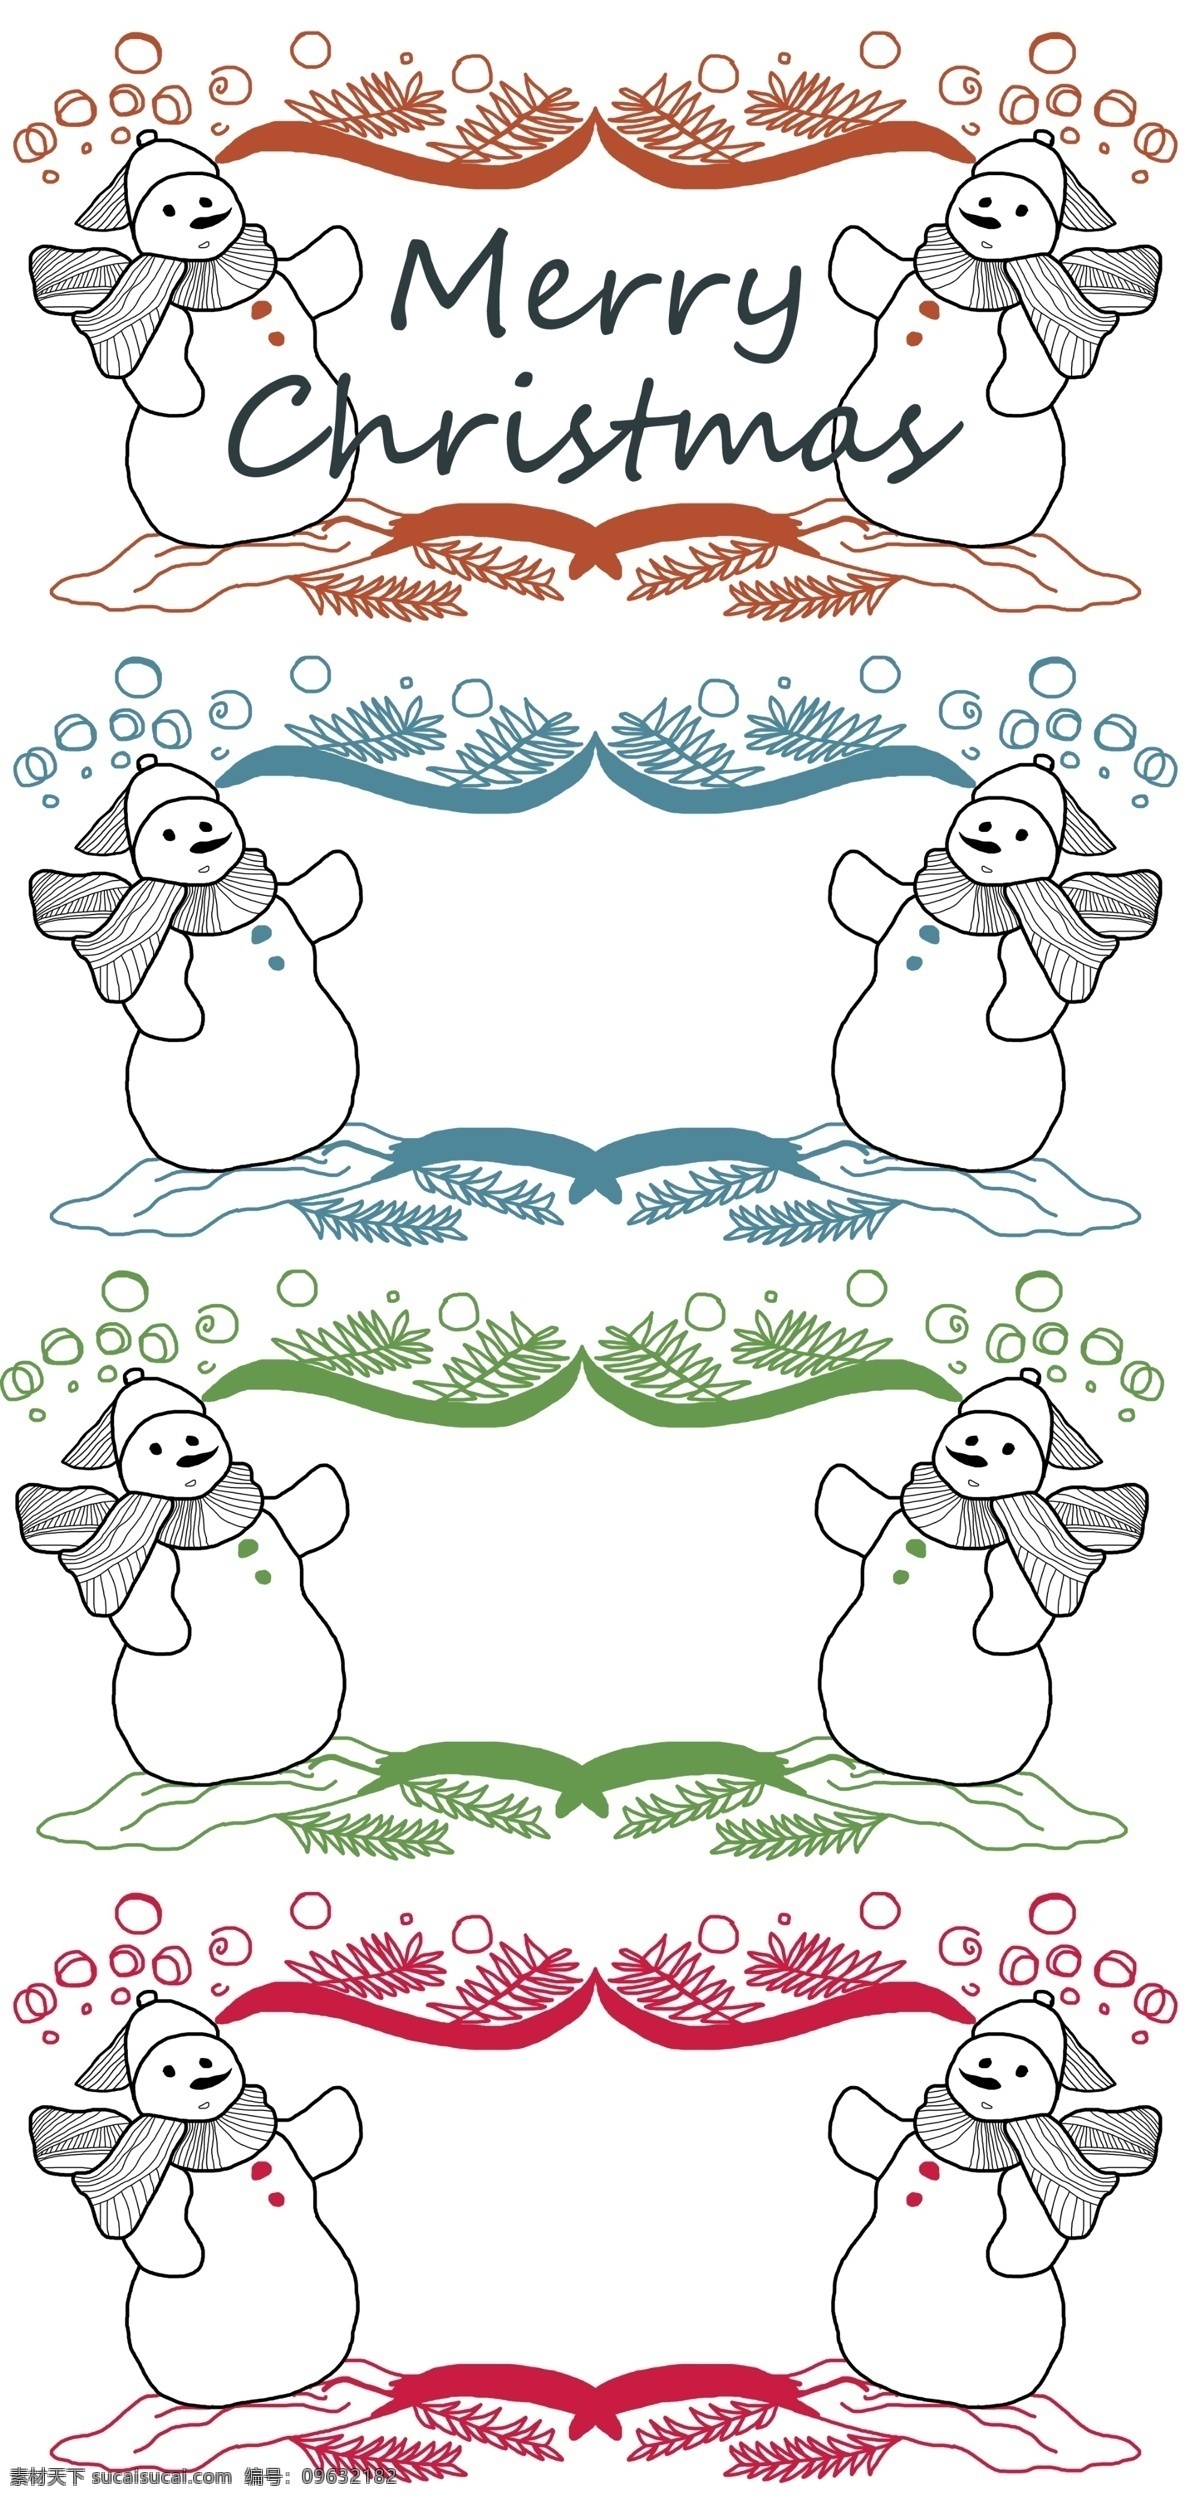 圣诞节 雪人 边框 背景 分层 格式 雪花 店铺招牌 冬天 背景边框 花边纹理 下雪 水彩手绘